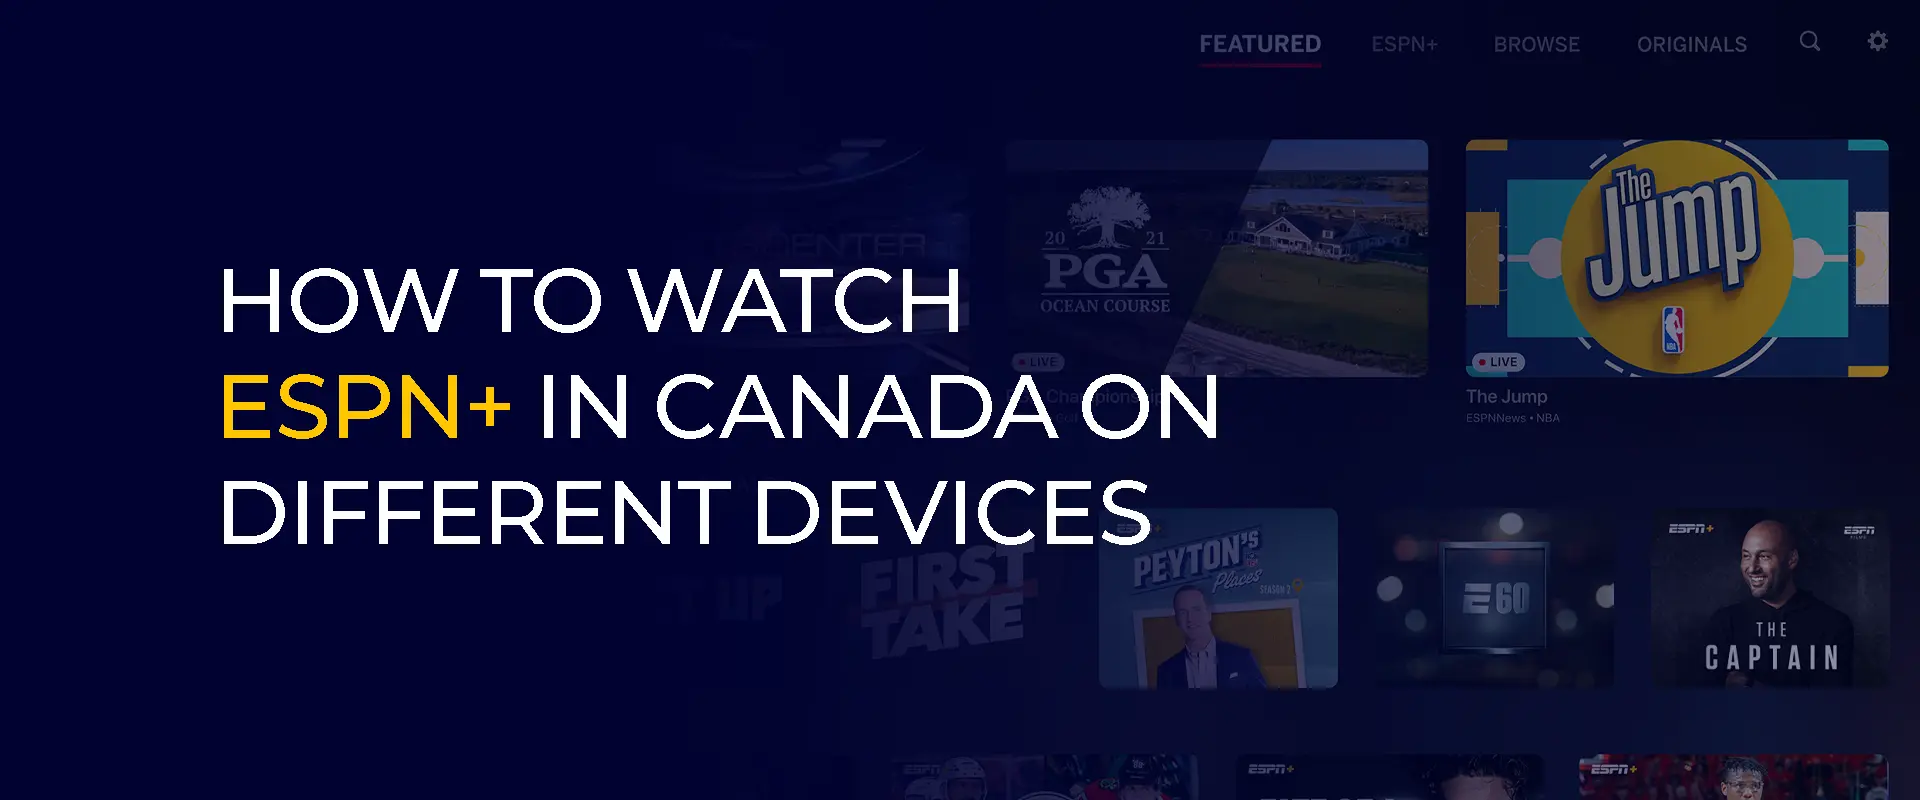 Kanada'da ESPN + Farklı Cihazlarda Nasıl İzlenir